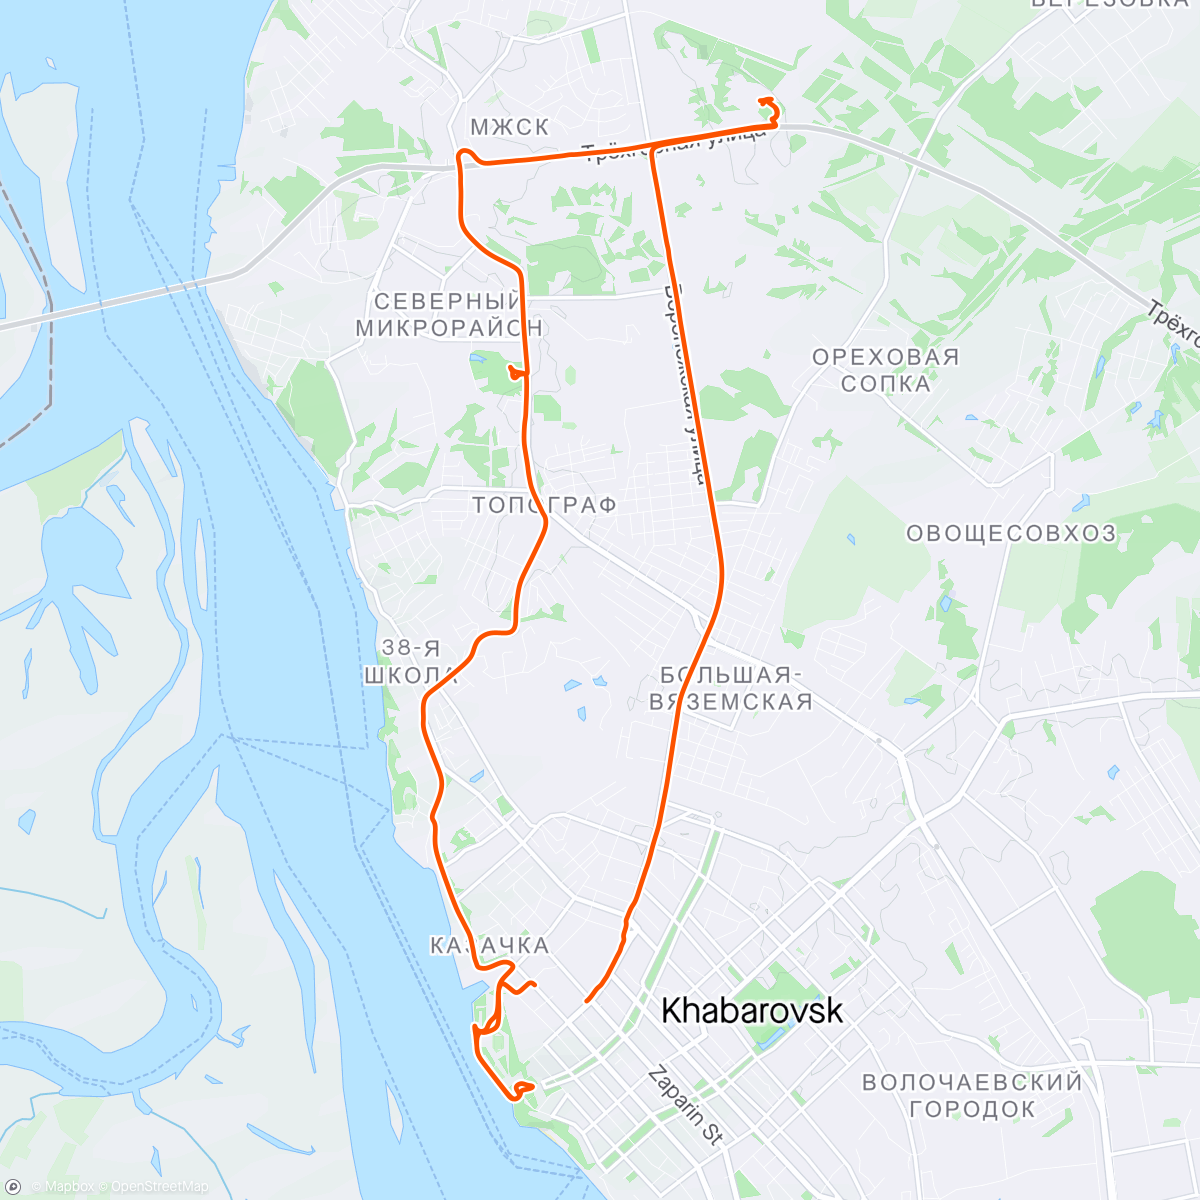 Mapa de la actividad, Afternoon Ride